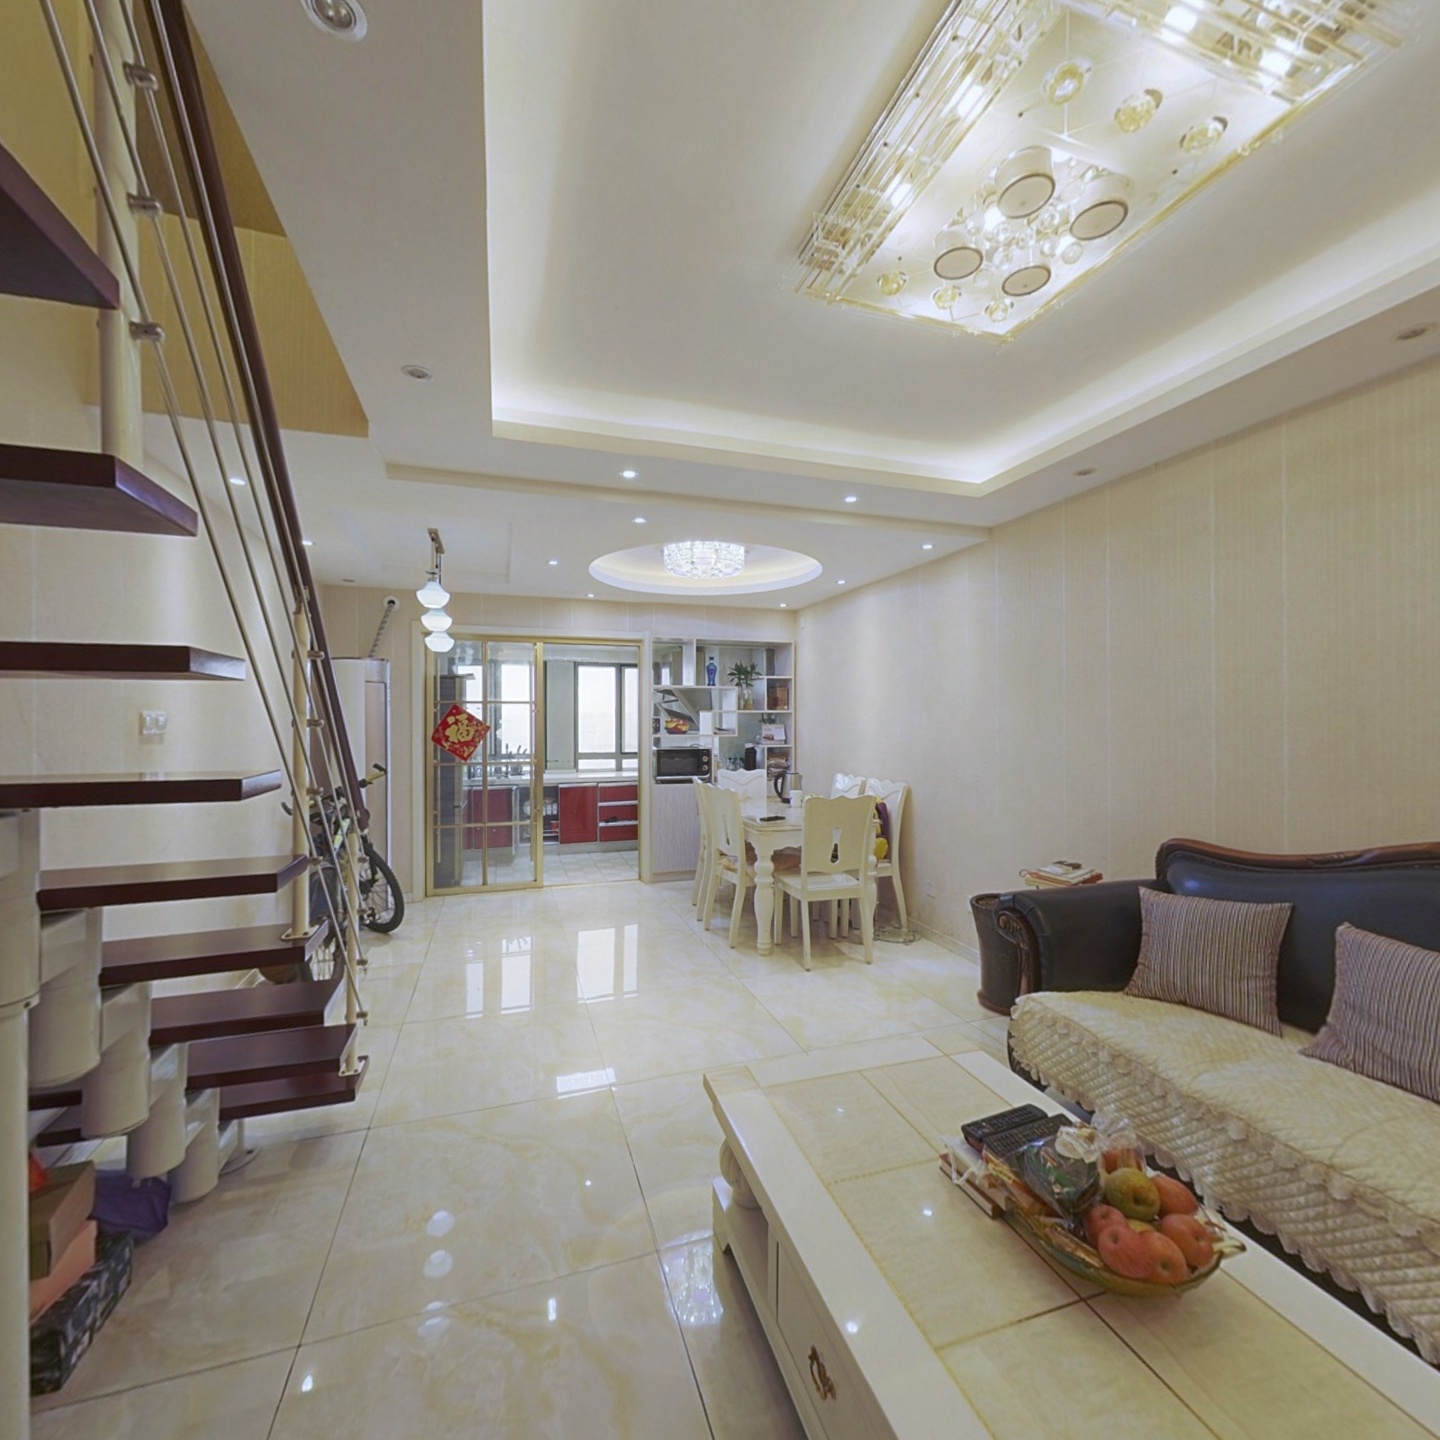 中环城国际公寓 168东区 70年产权通燃气 精华三室